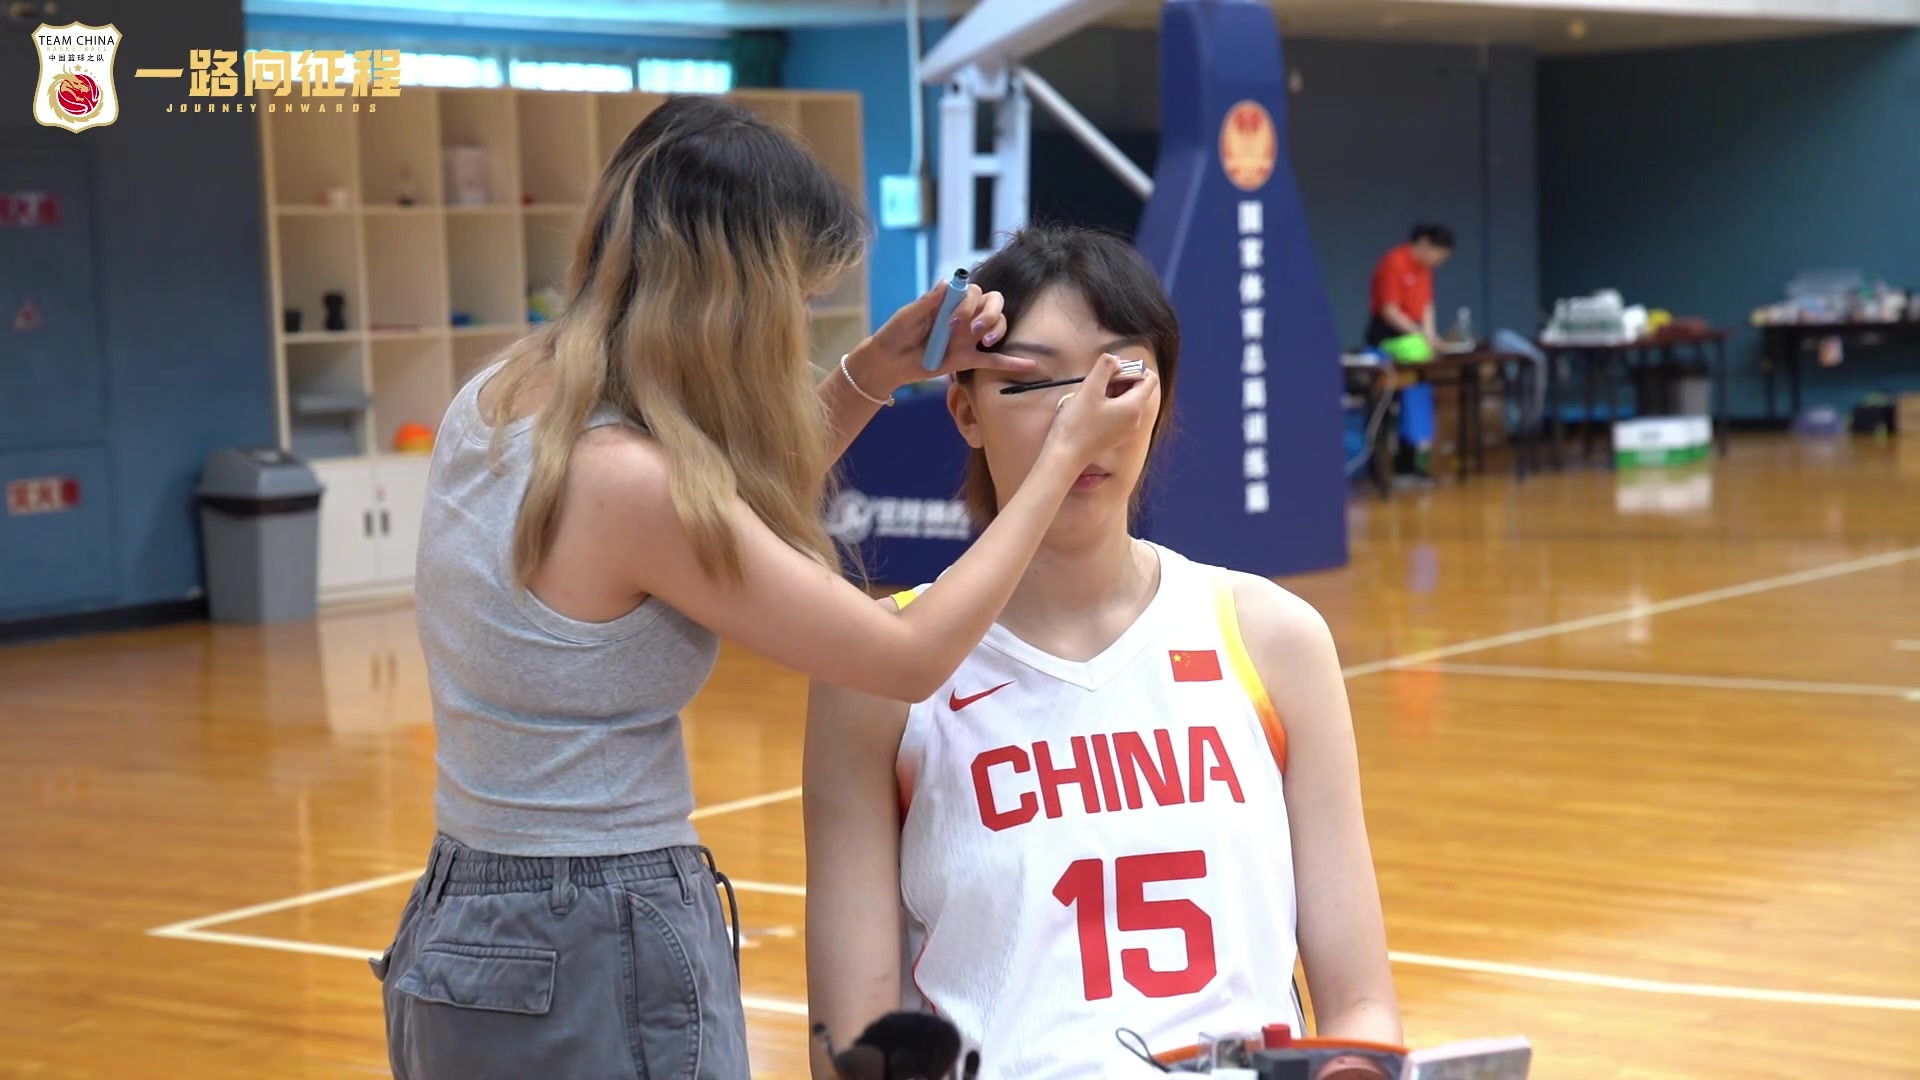 中国女篮奥运定妆照拍摄花絮 各个活力十足拍摄现场轻松愉快